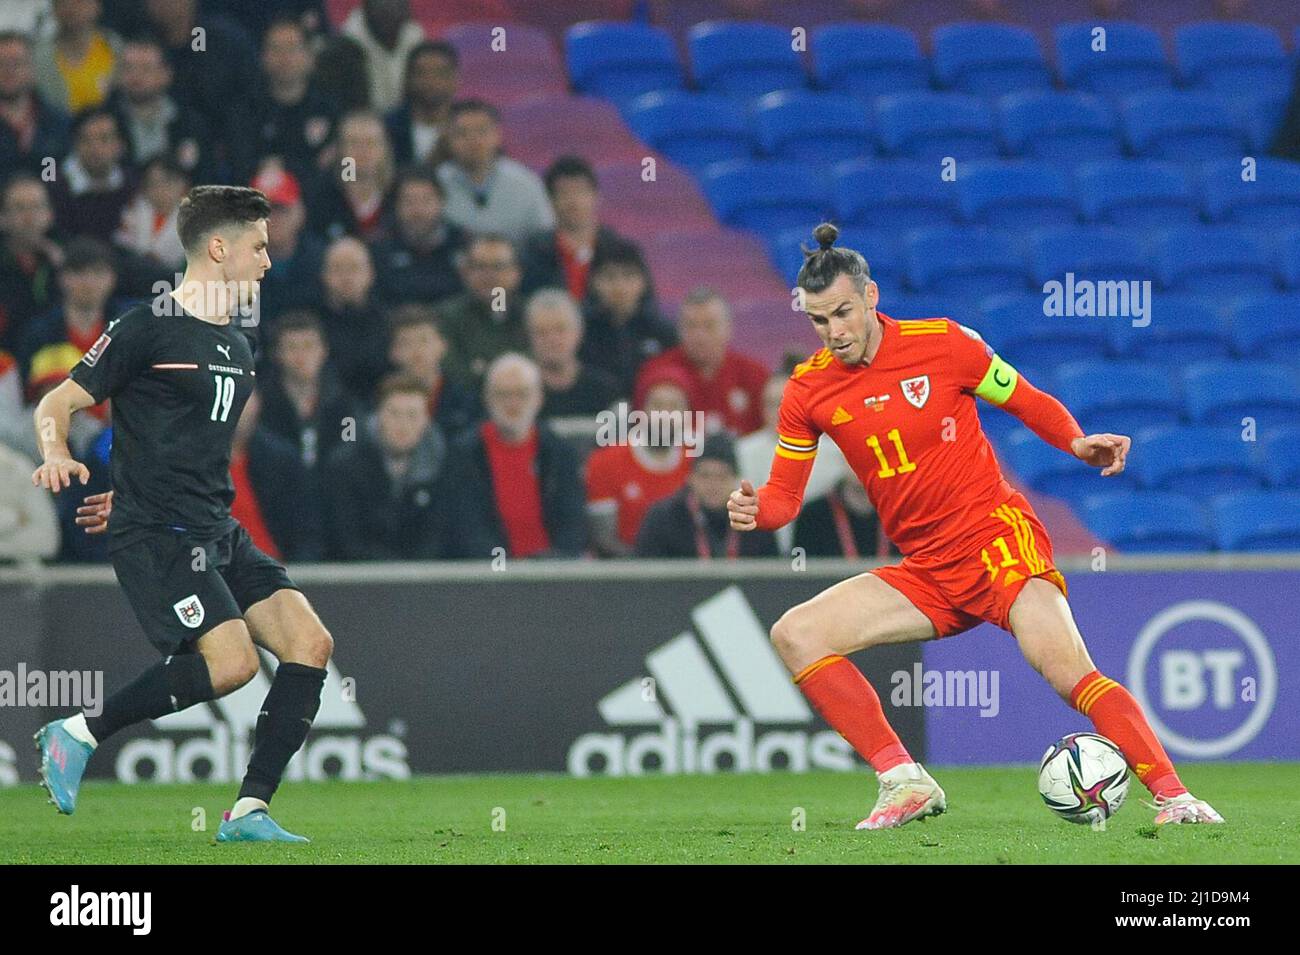 Cardiff, UK. 24th Mar, 2022. Gareth Bale (Wales no 11 )

